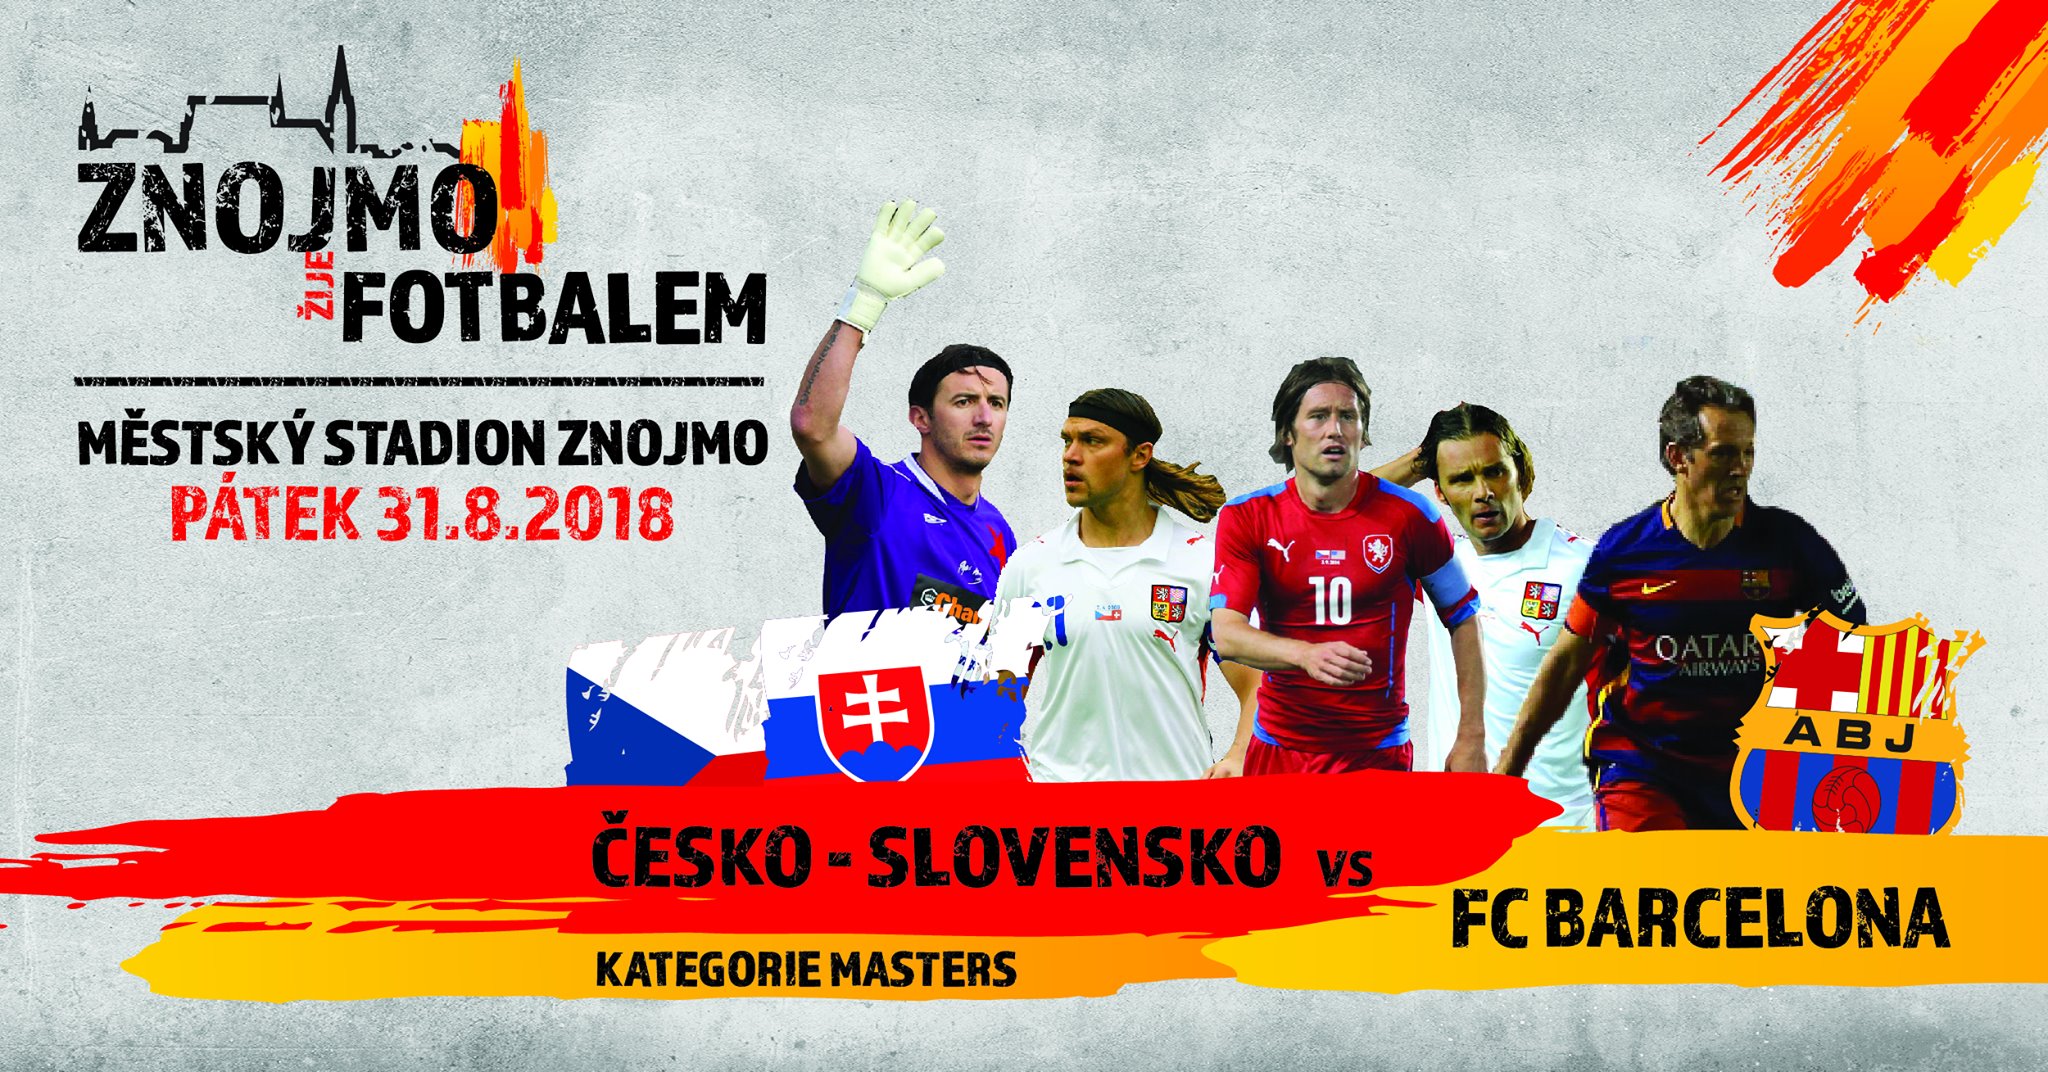 esko-Slovensko - Barcelona ve Znojm!